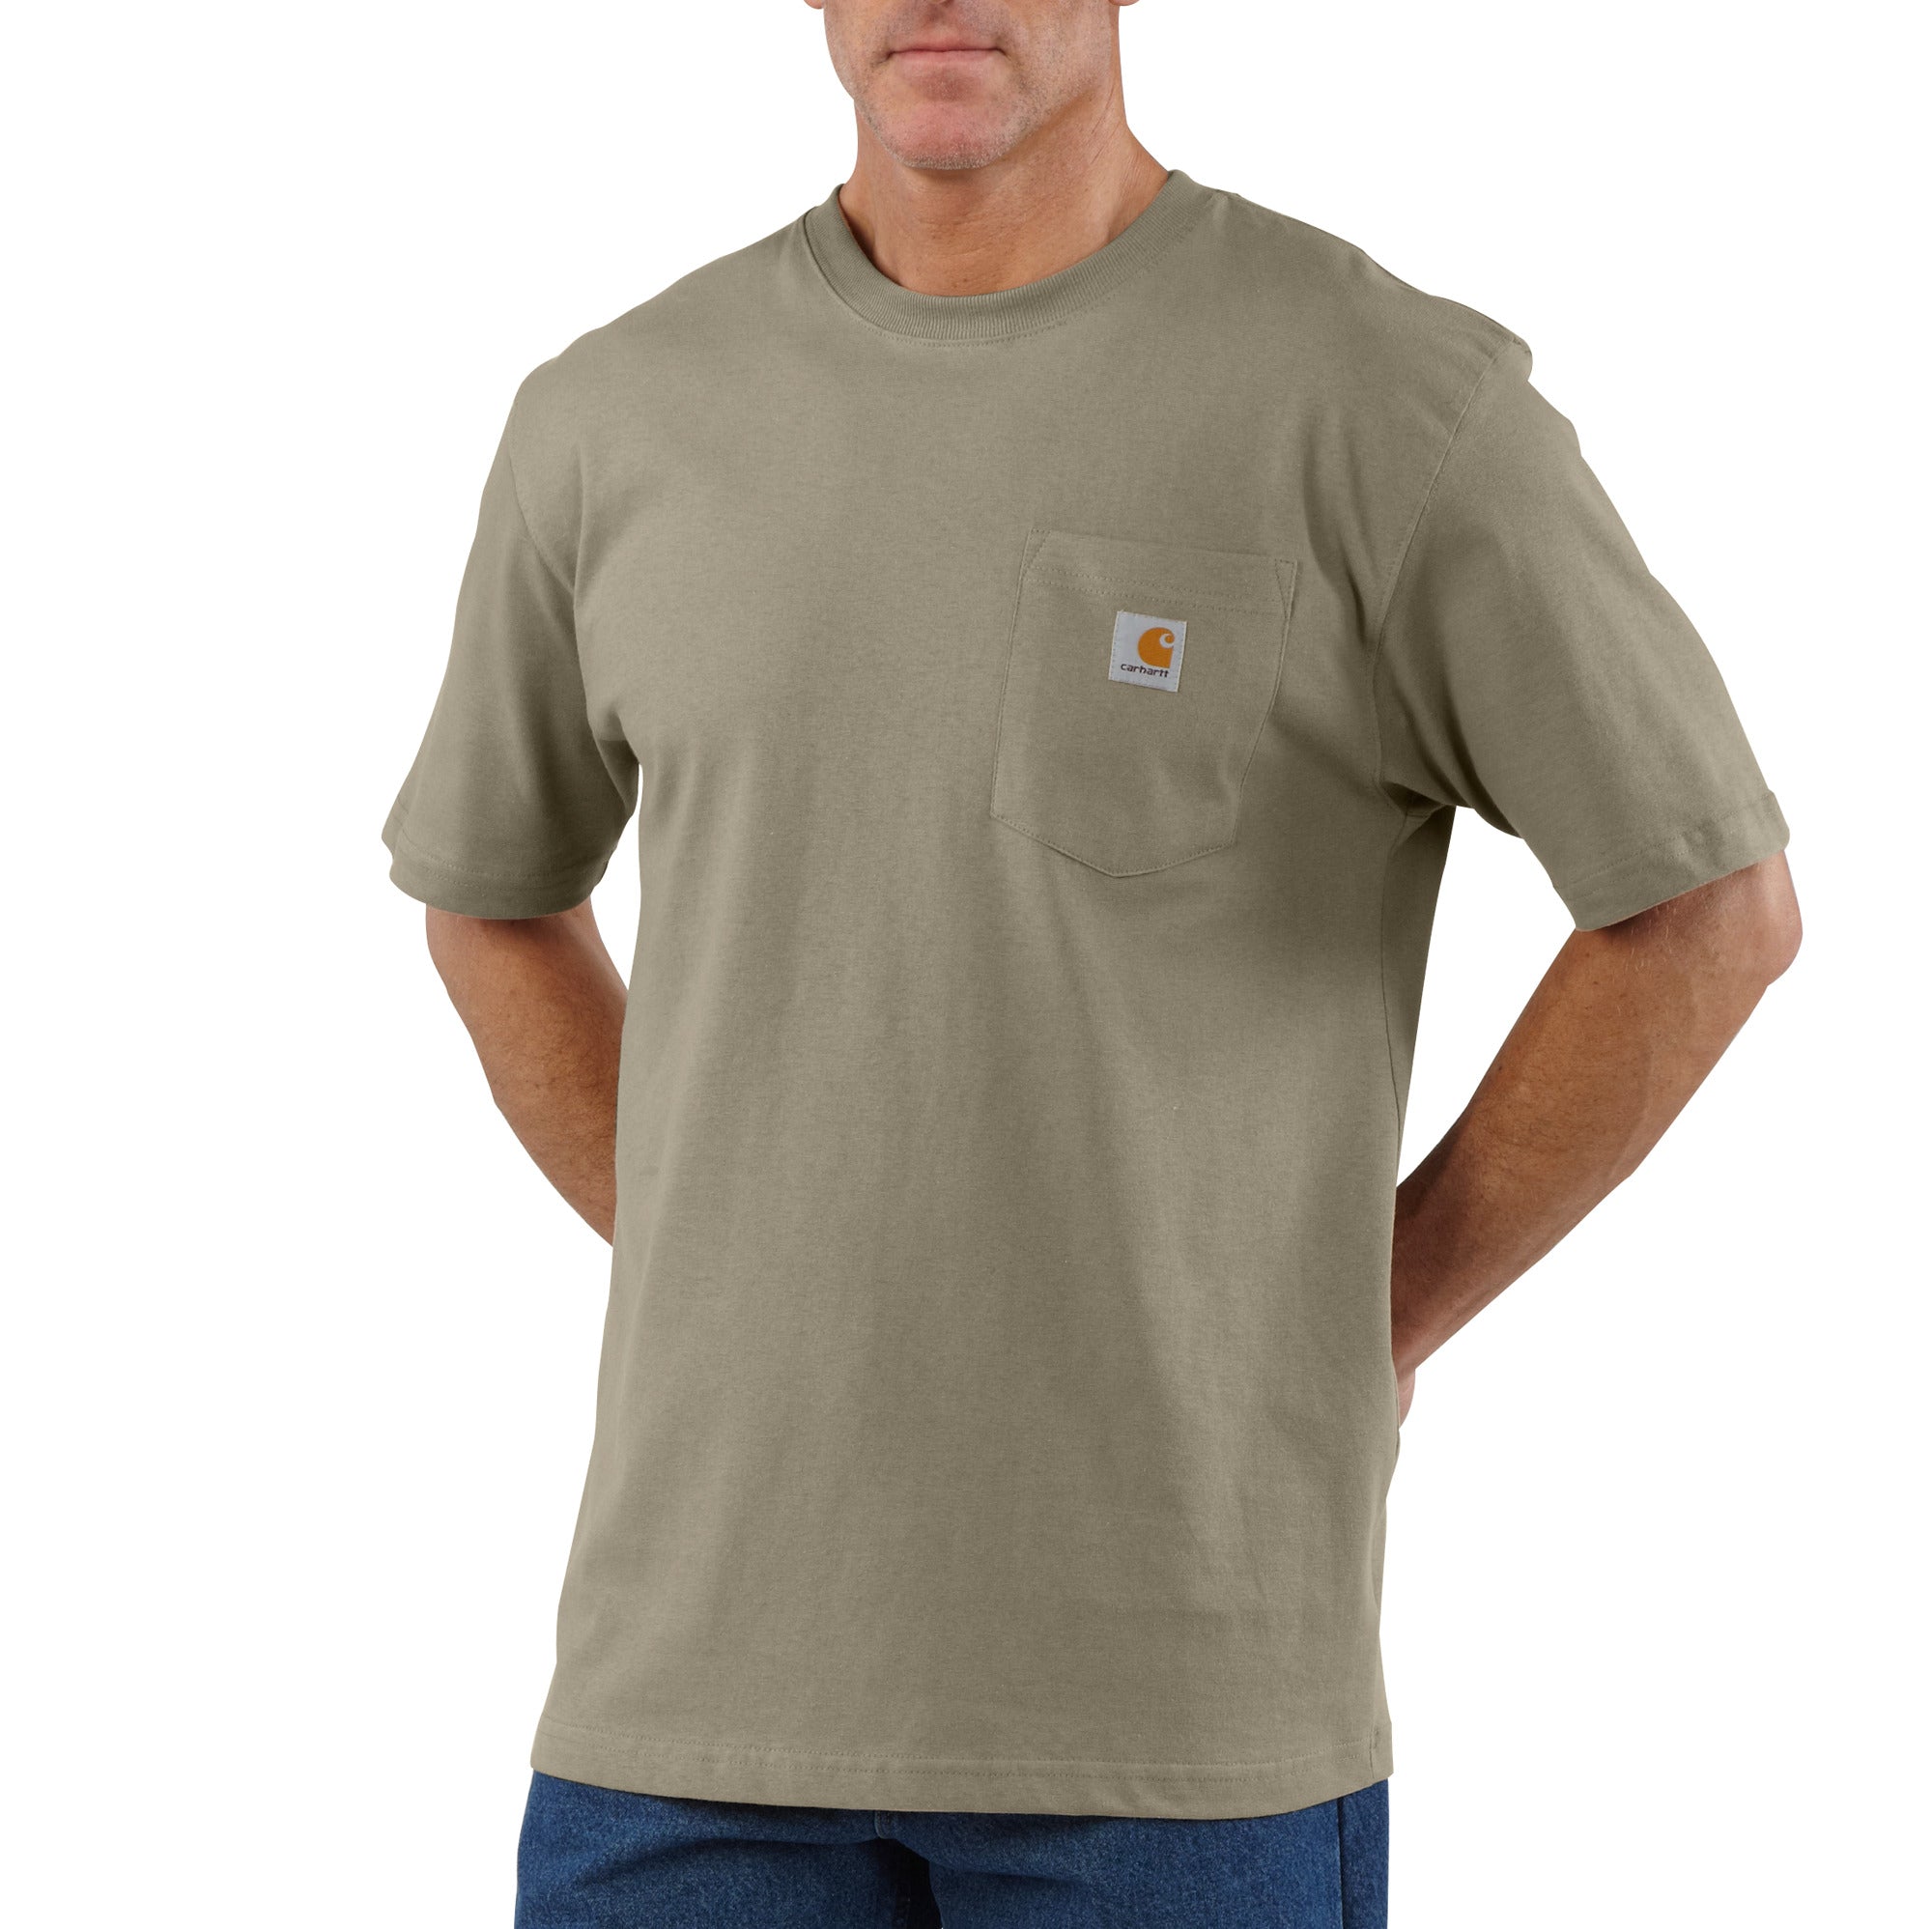 'Carhartt' Men's Loose Fit Heavyweight Pocket T-Shirt - Desert